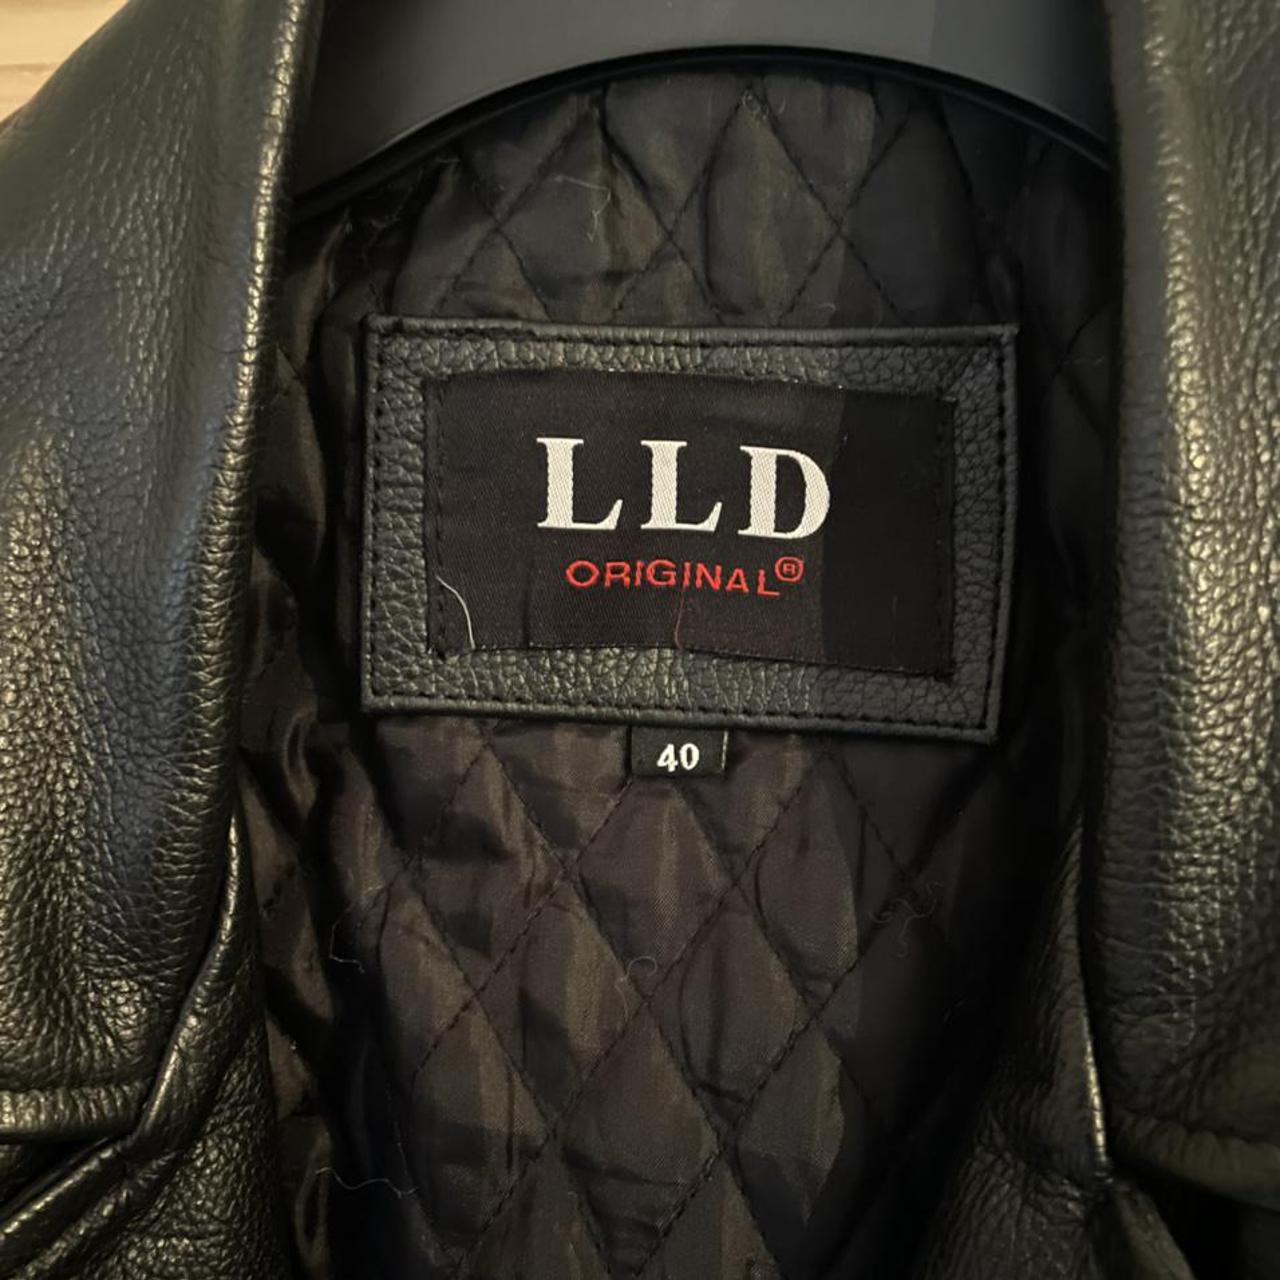 LLD Original Leather Biker Jacket 100% Genuine... - Depop